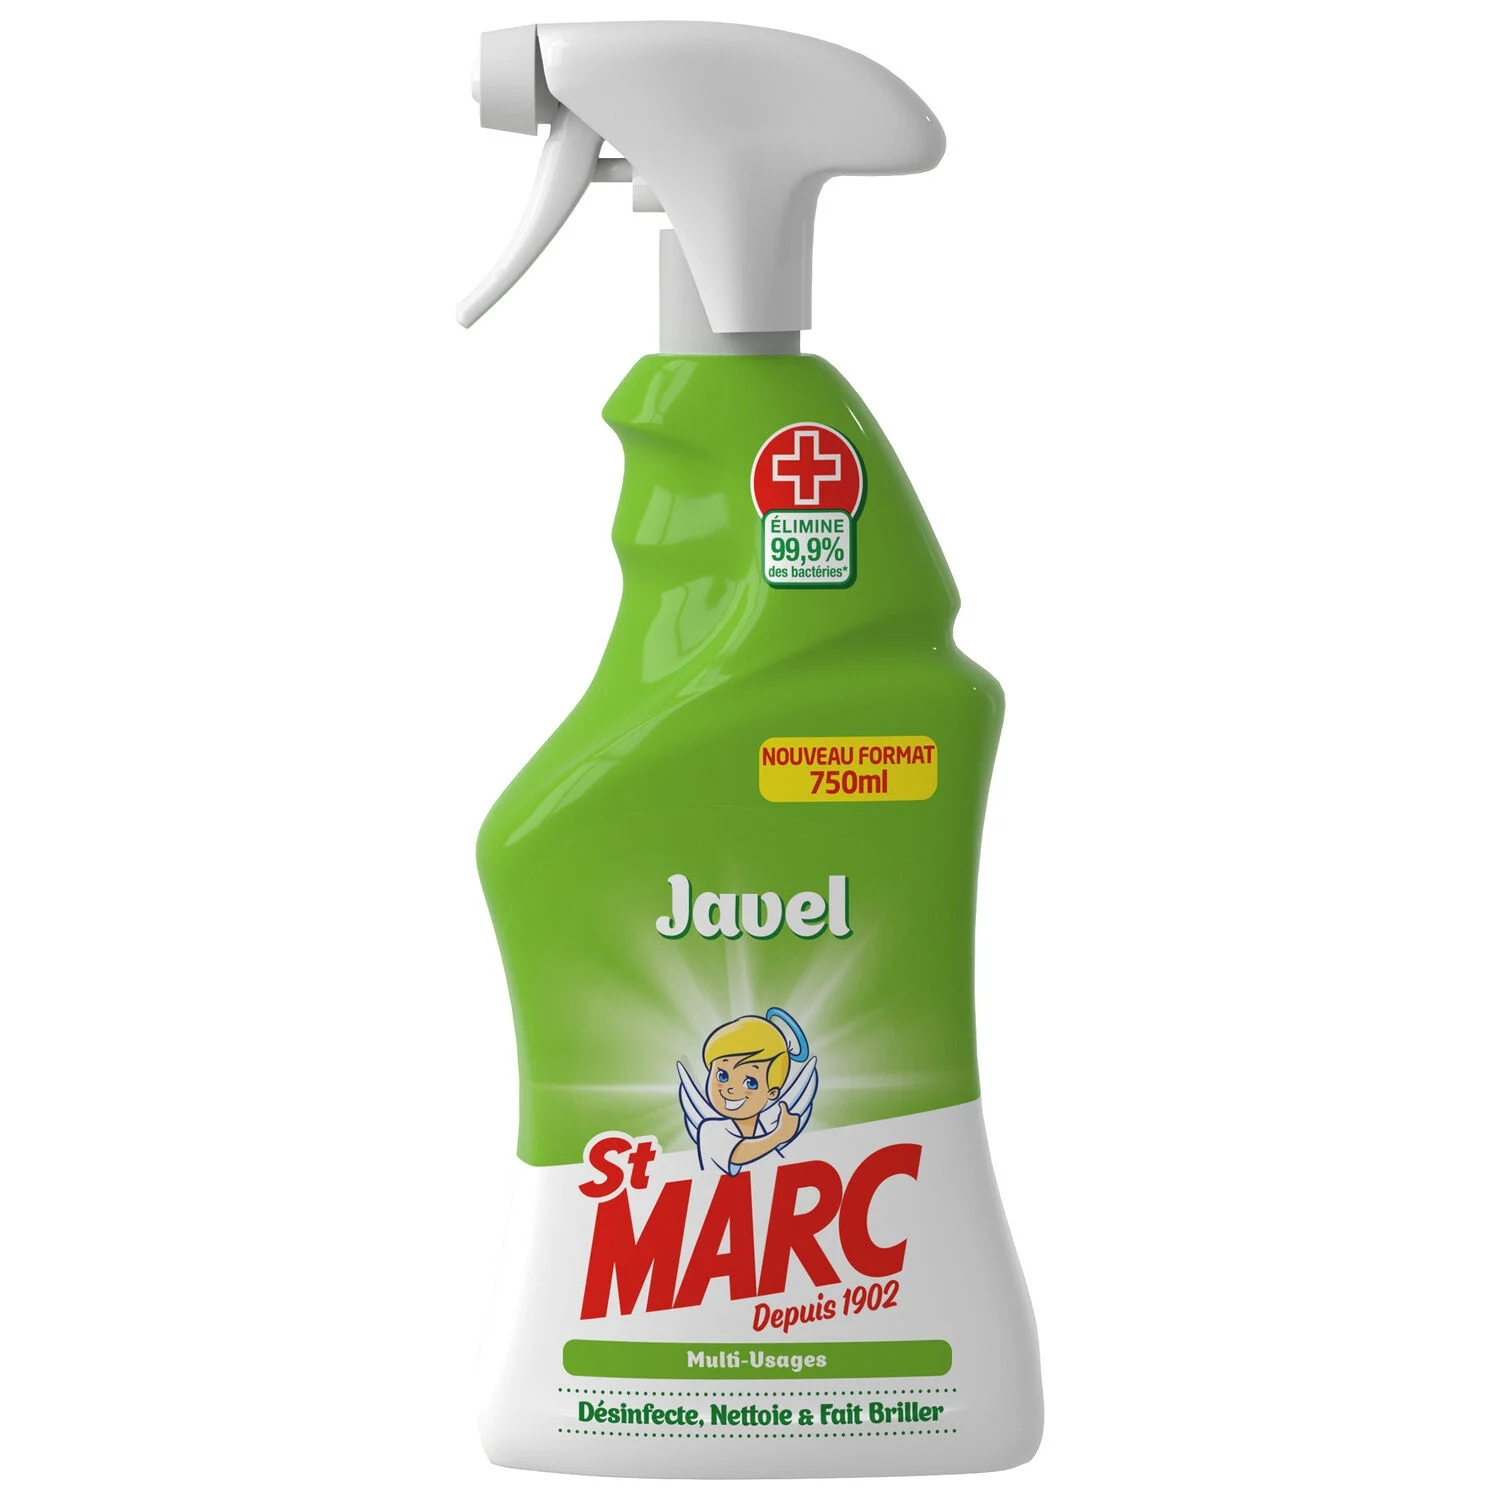 Spray Javel Multi-Usages, 750ml - SAINT MARC